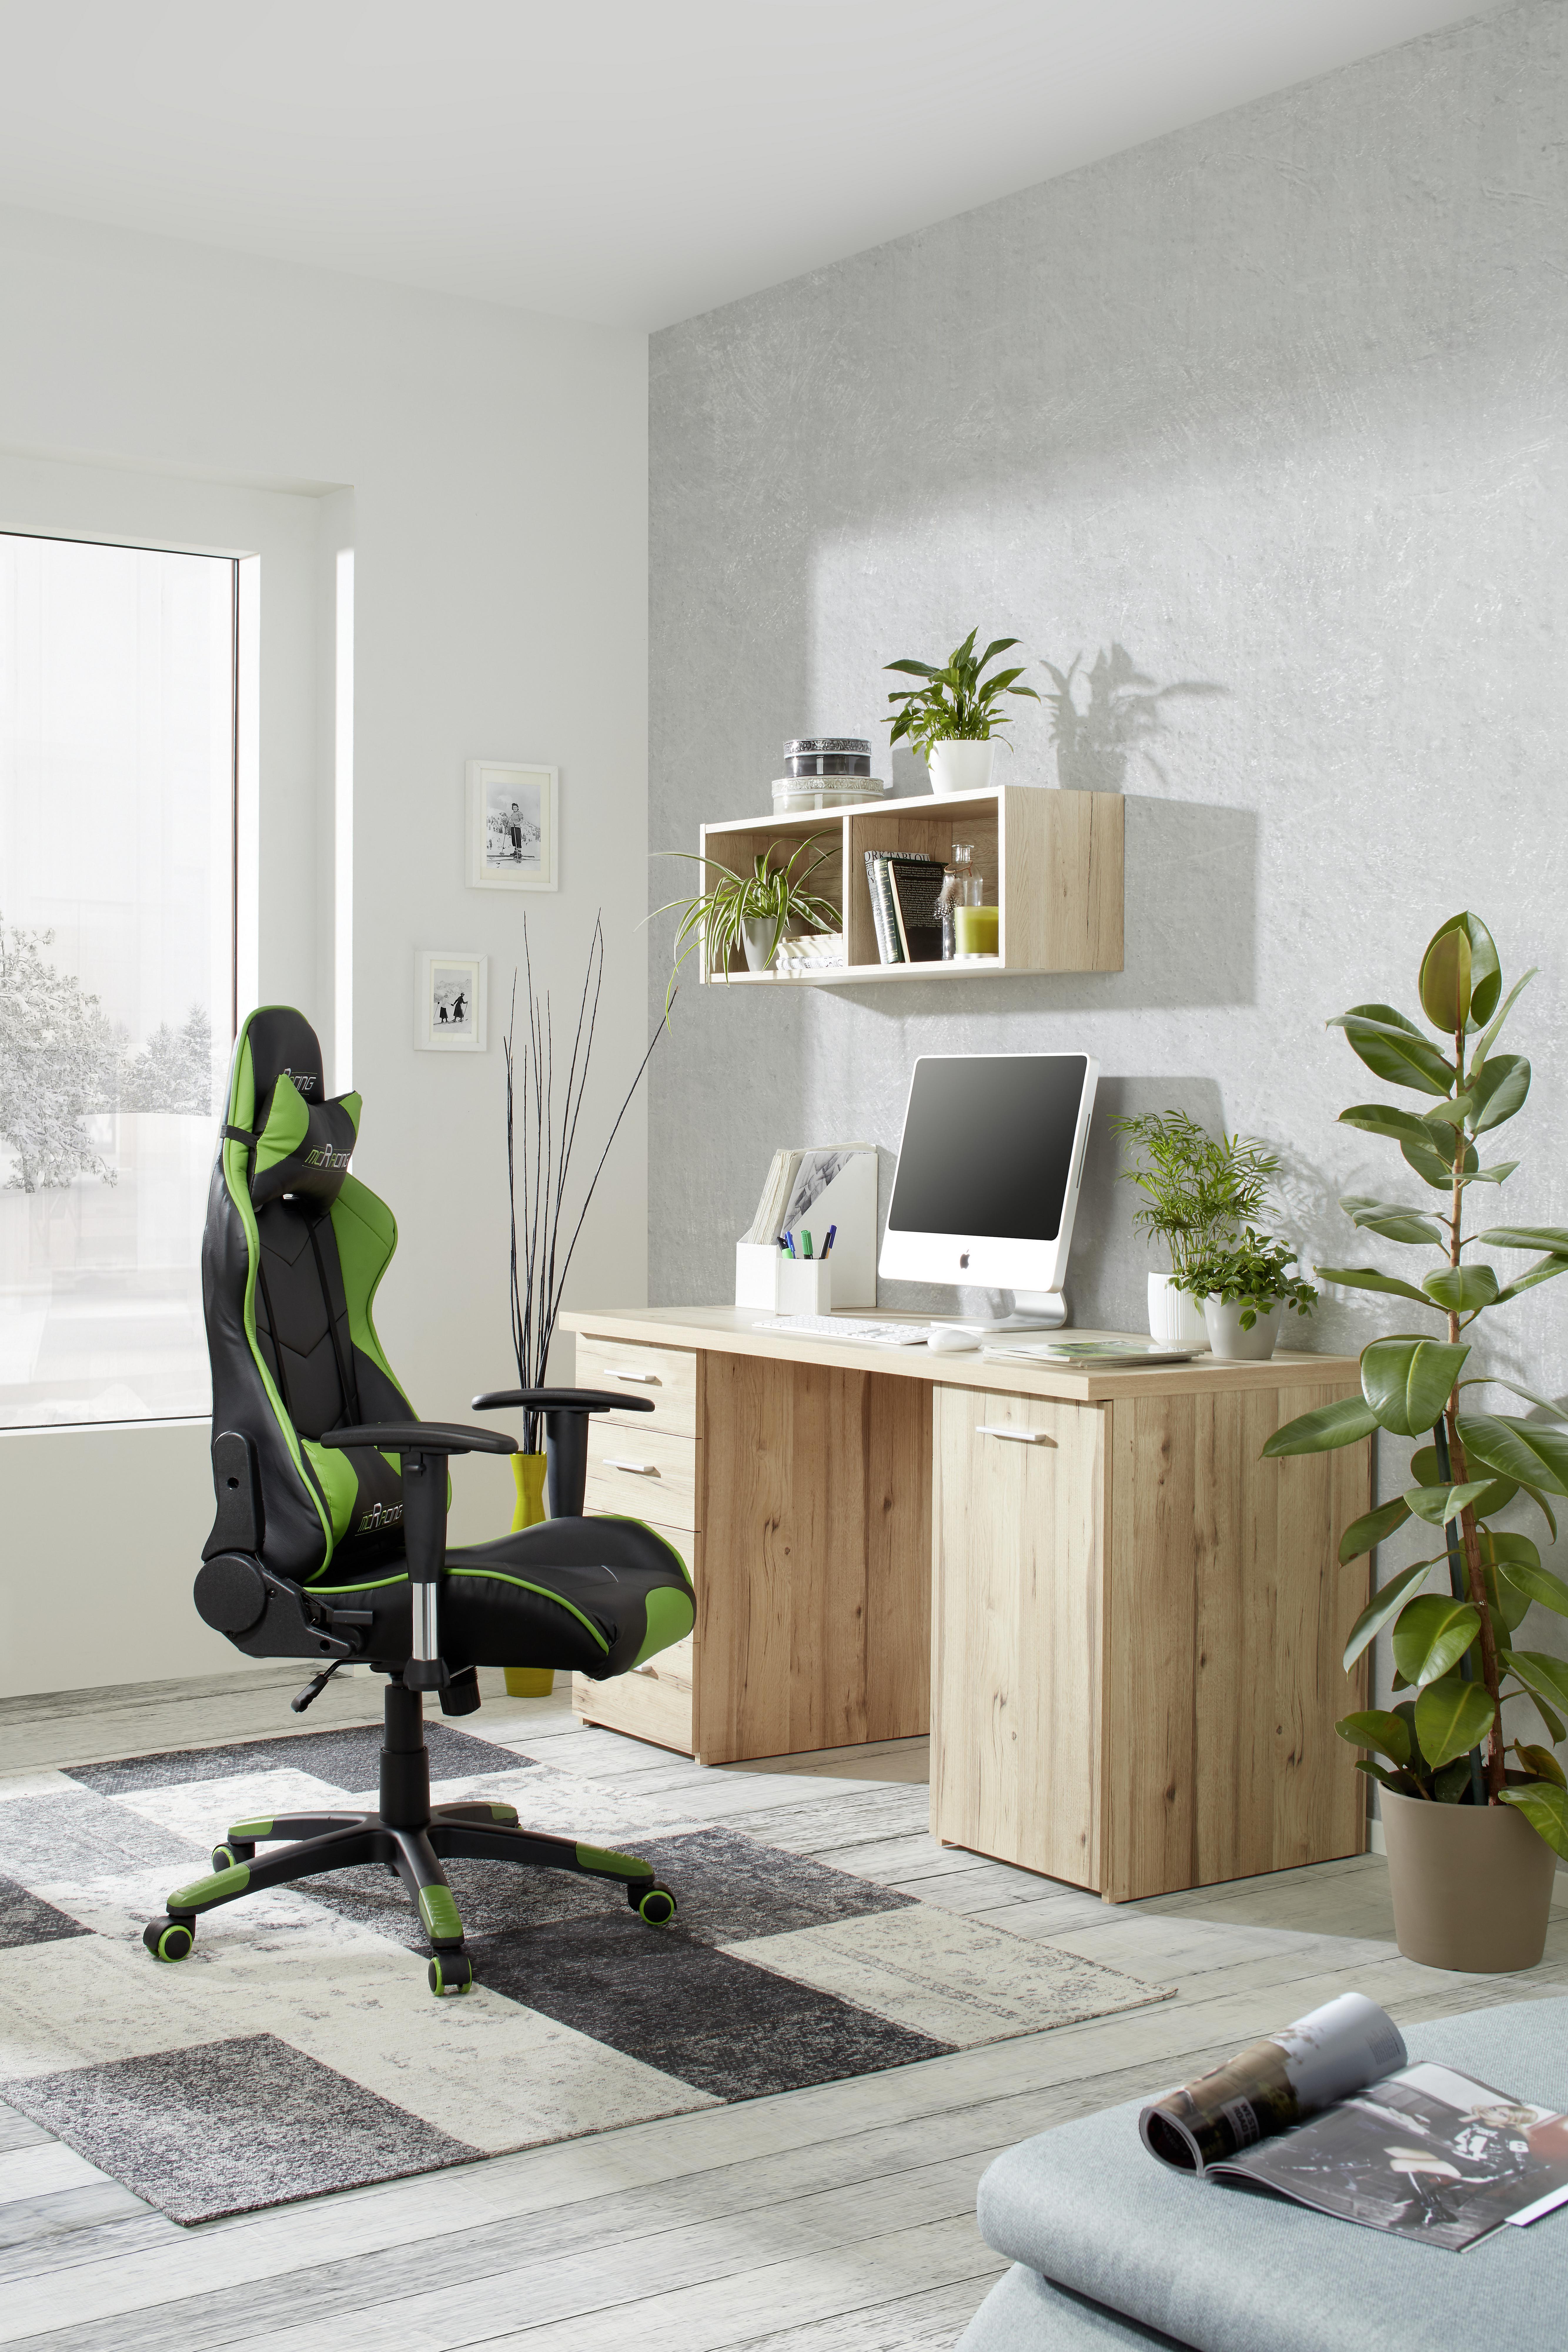 Schreibtisch in Eichefarben - Eichefarben/Alufarben, MODERN, Holzwerkstoff/Kunststoff (145/76,3/60cm) - Modern Living